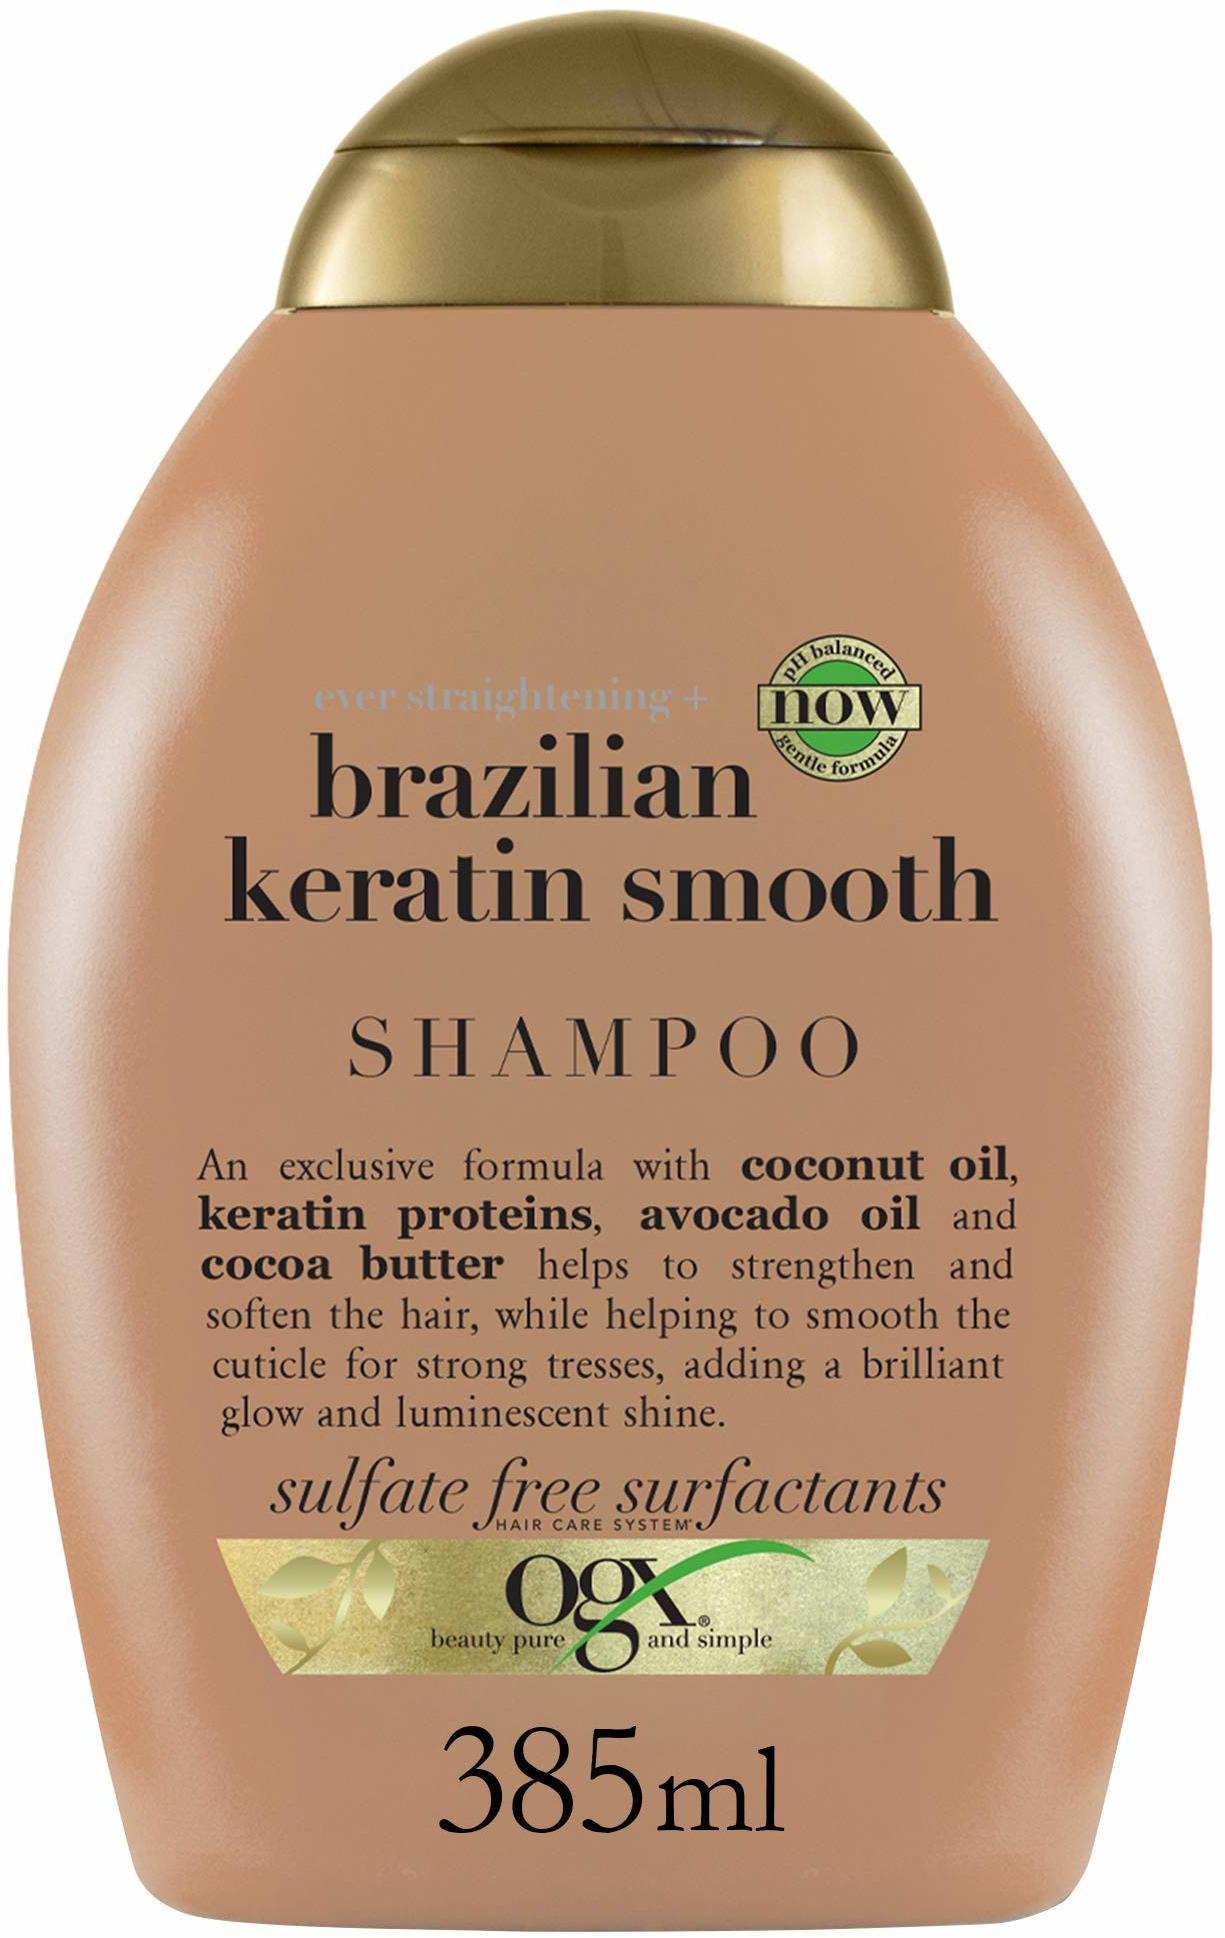 OGX Brazilian Keratin Smooth Shampoo (385 ml) Erfahrungen 3.3/5 Sternen